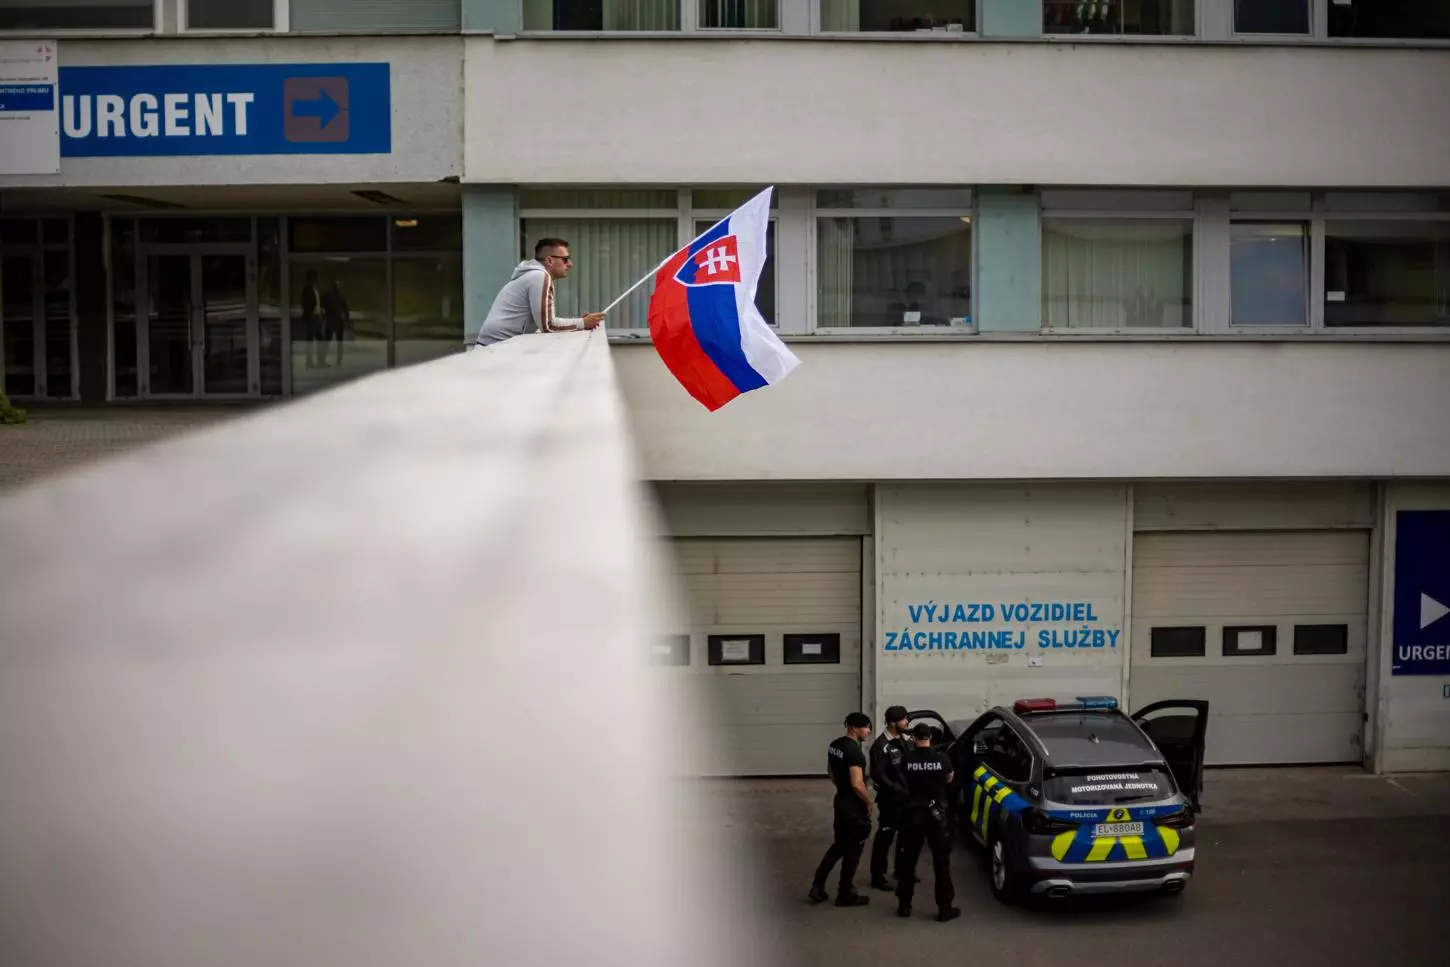 Un hombre ondea la bandera nacional eslovaca frente al hospital donde el primer ministro eslovaco, Robert Fico, está siendo tratado después de recibir varios disparos el pasado 15 de mayo. — MARTIN DIVISEK / EFE